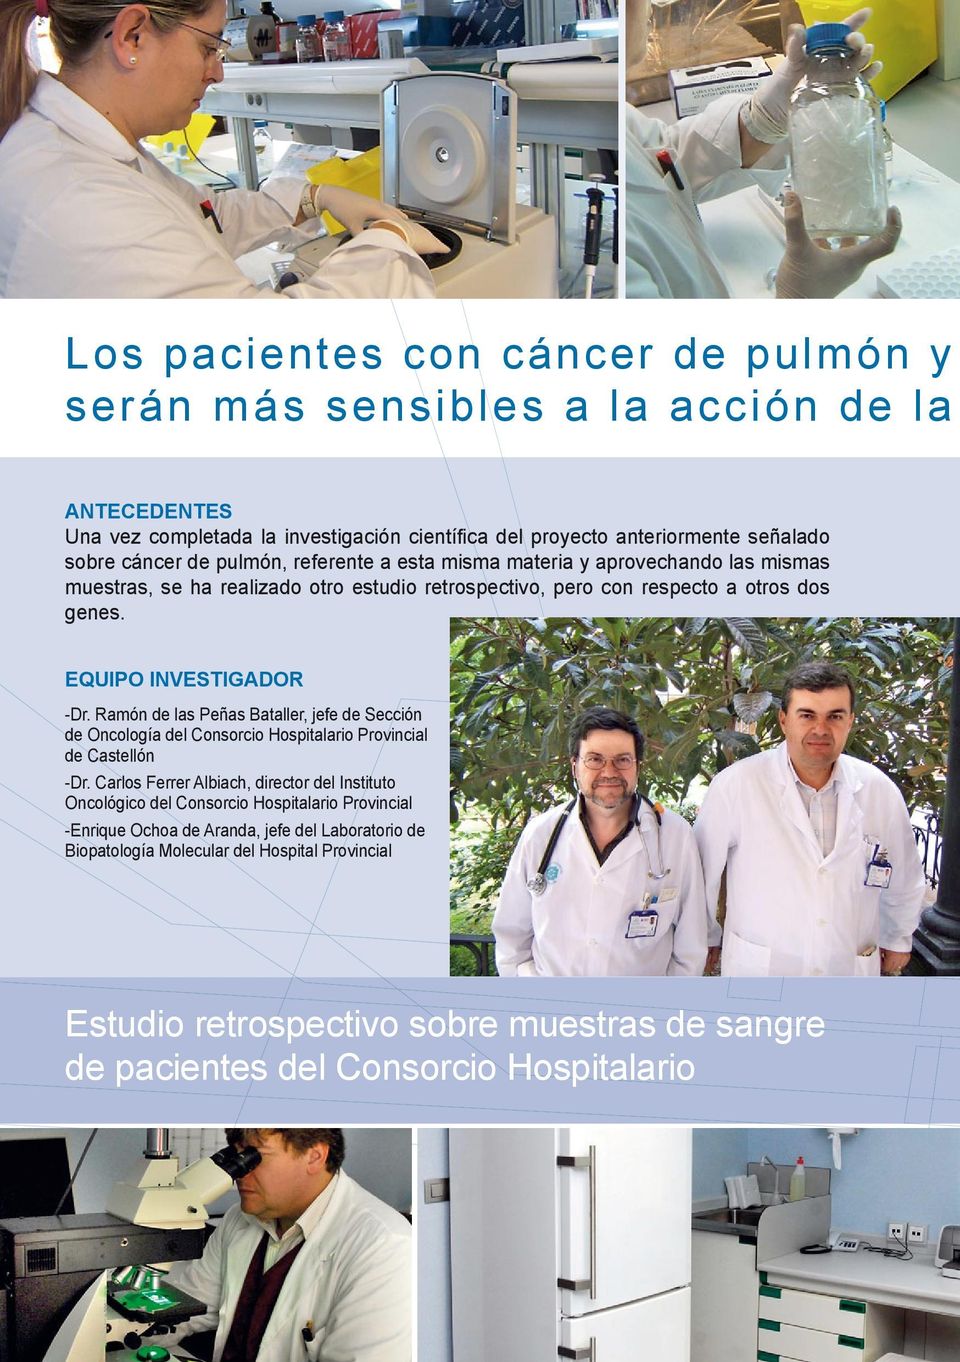 Ramón de las Peñas Bataller, jefe de Sección de Oncología del Consorcio Hospitalario Provincial de Castellón -Dr.